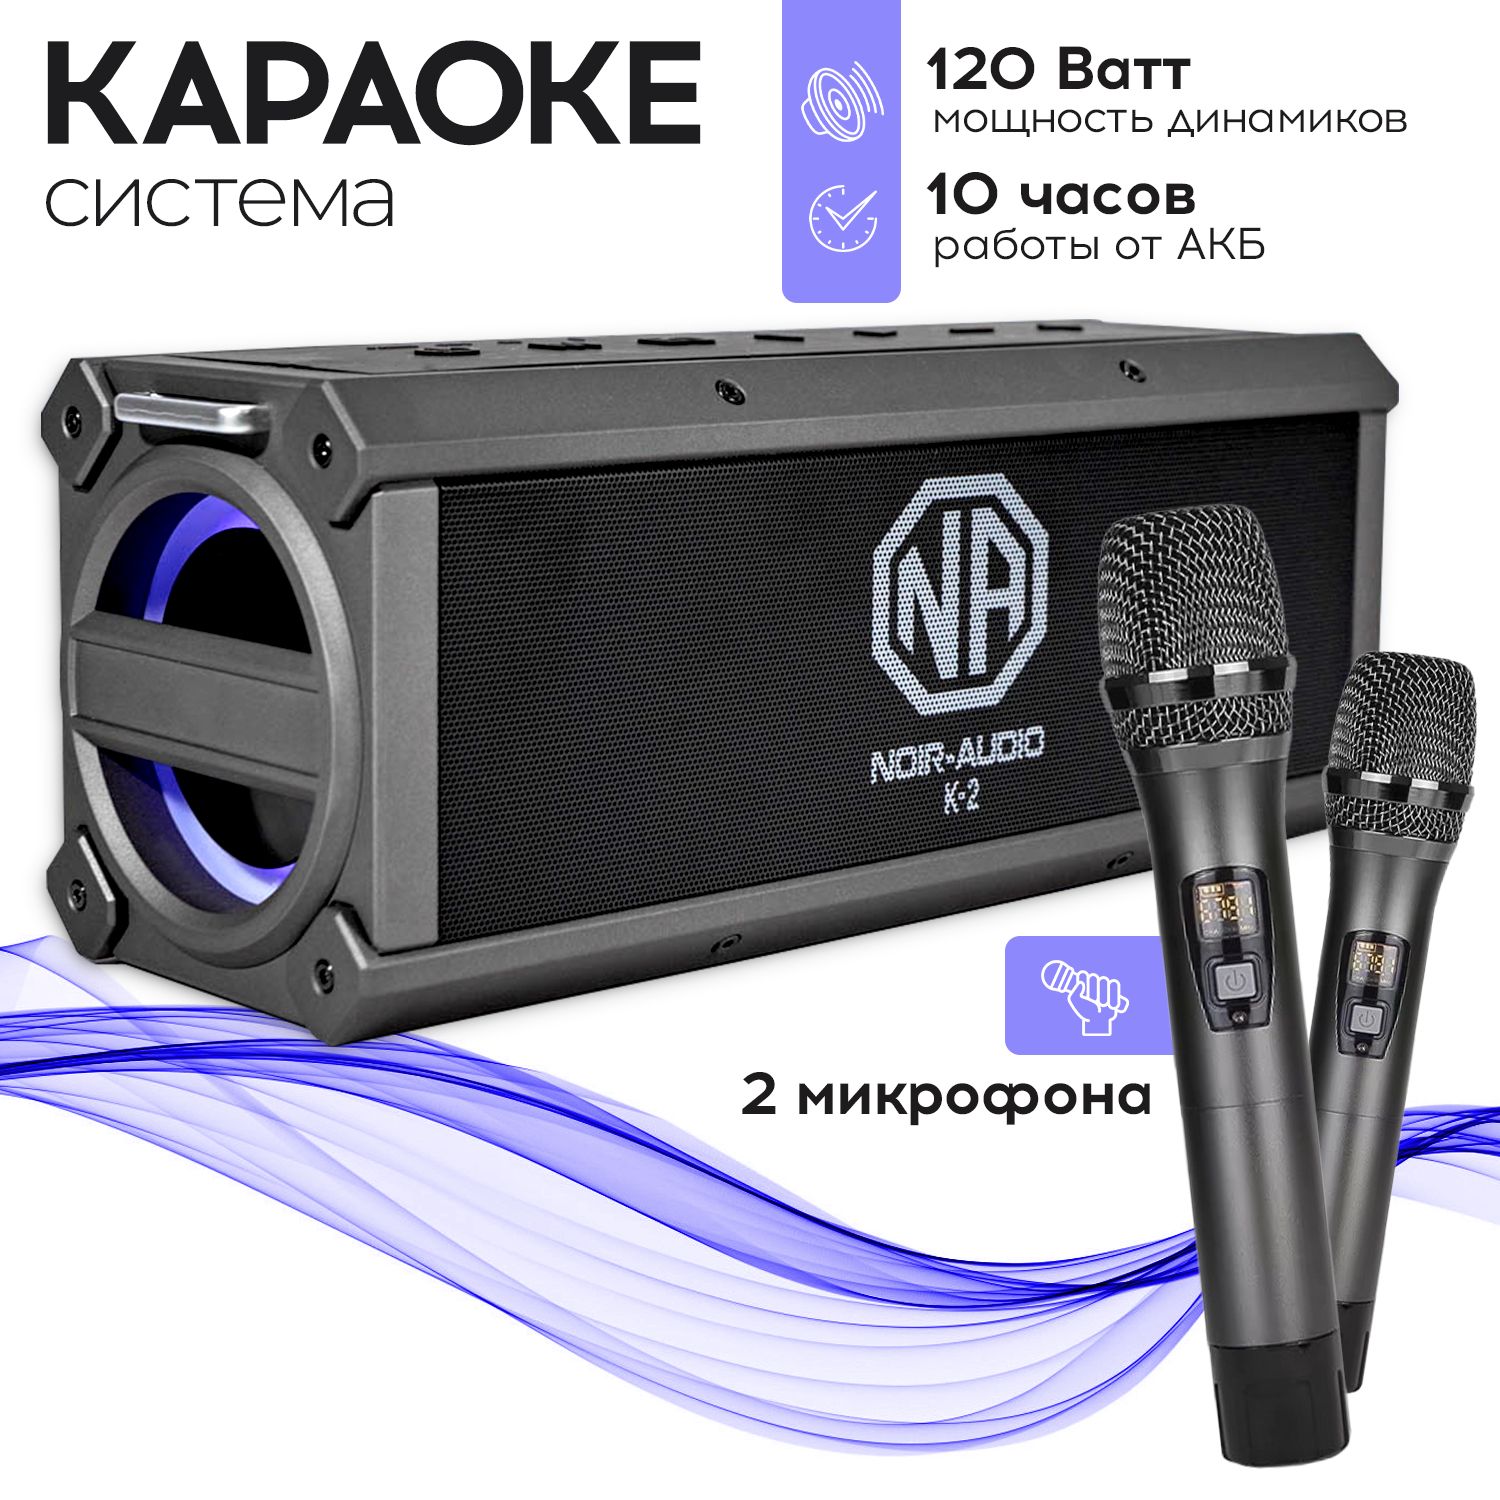 КараокесистемаNOIR-audioK-2сдвумябеспроводнымимикрофонами